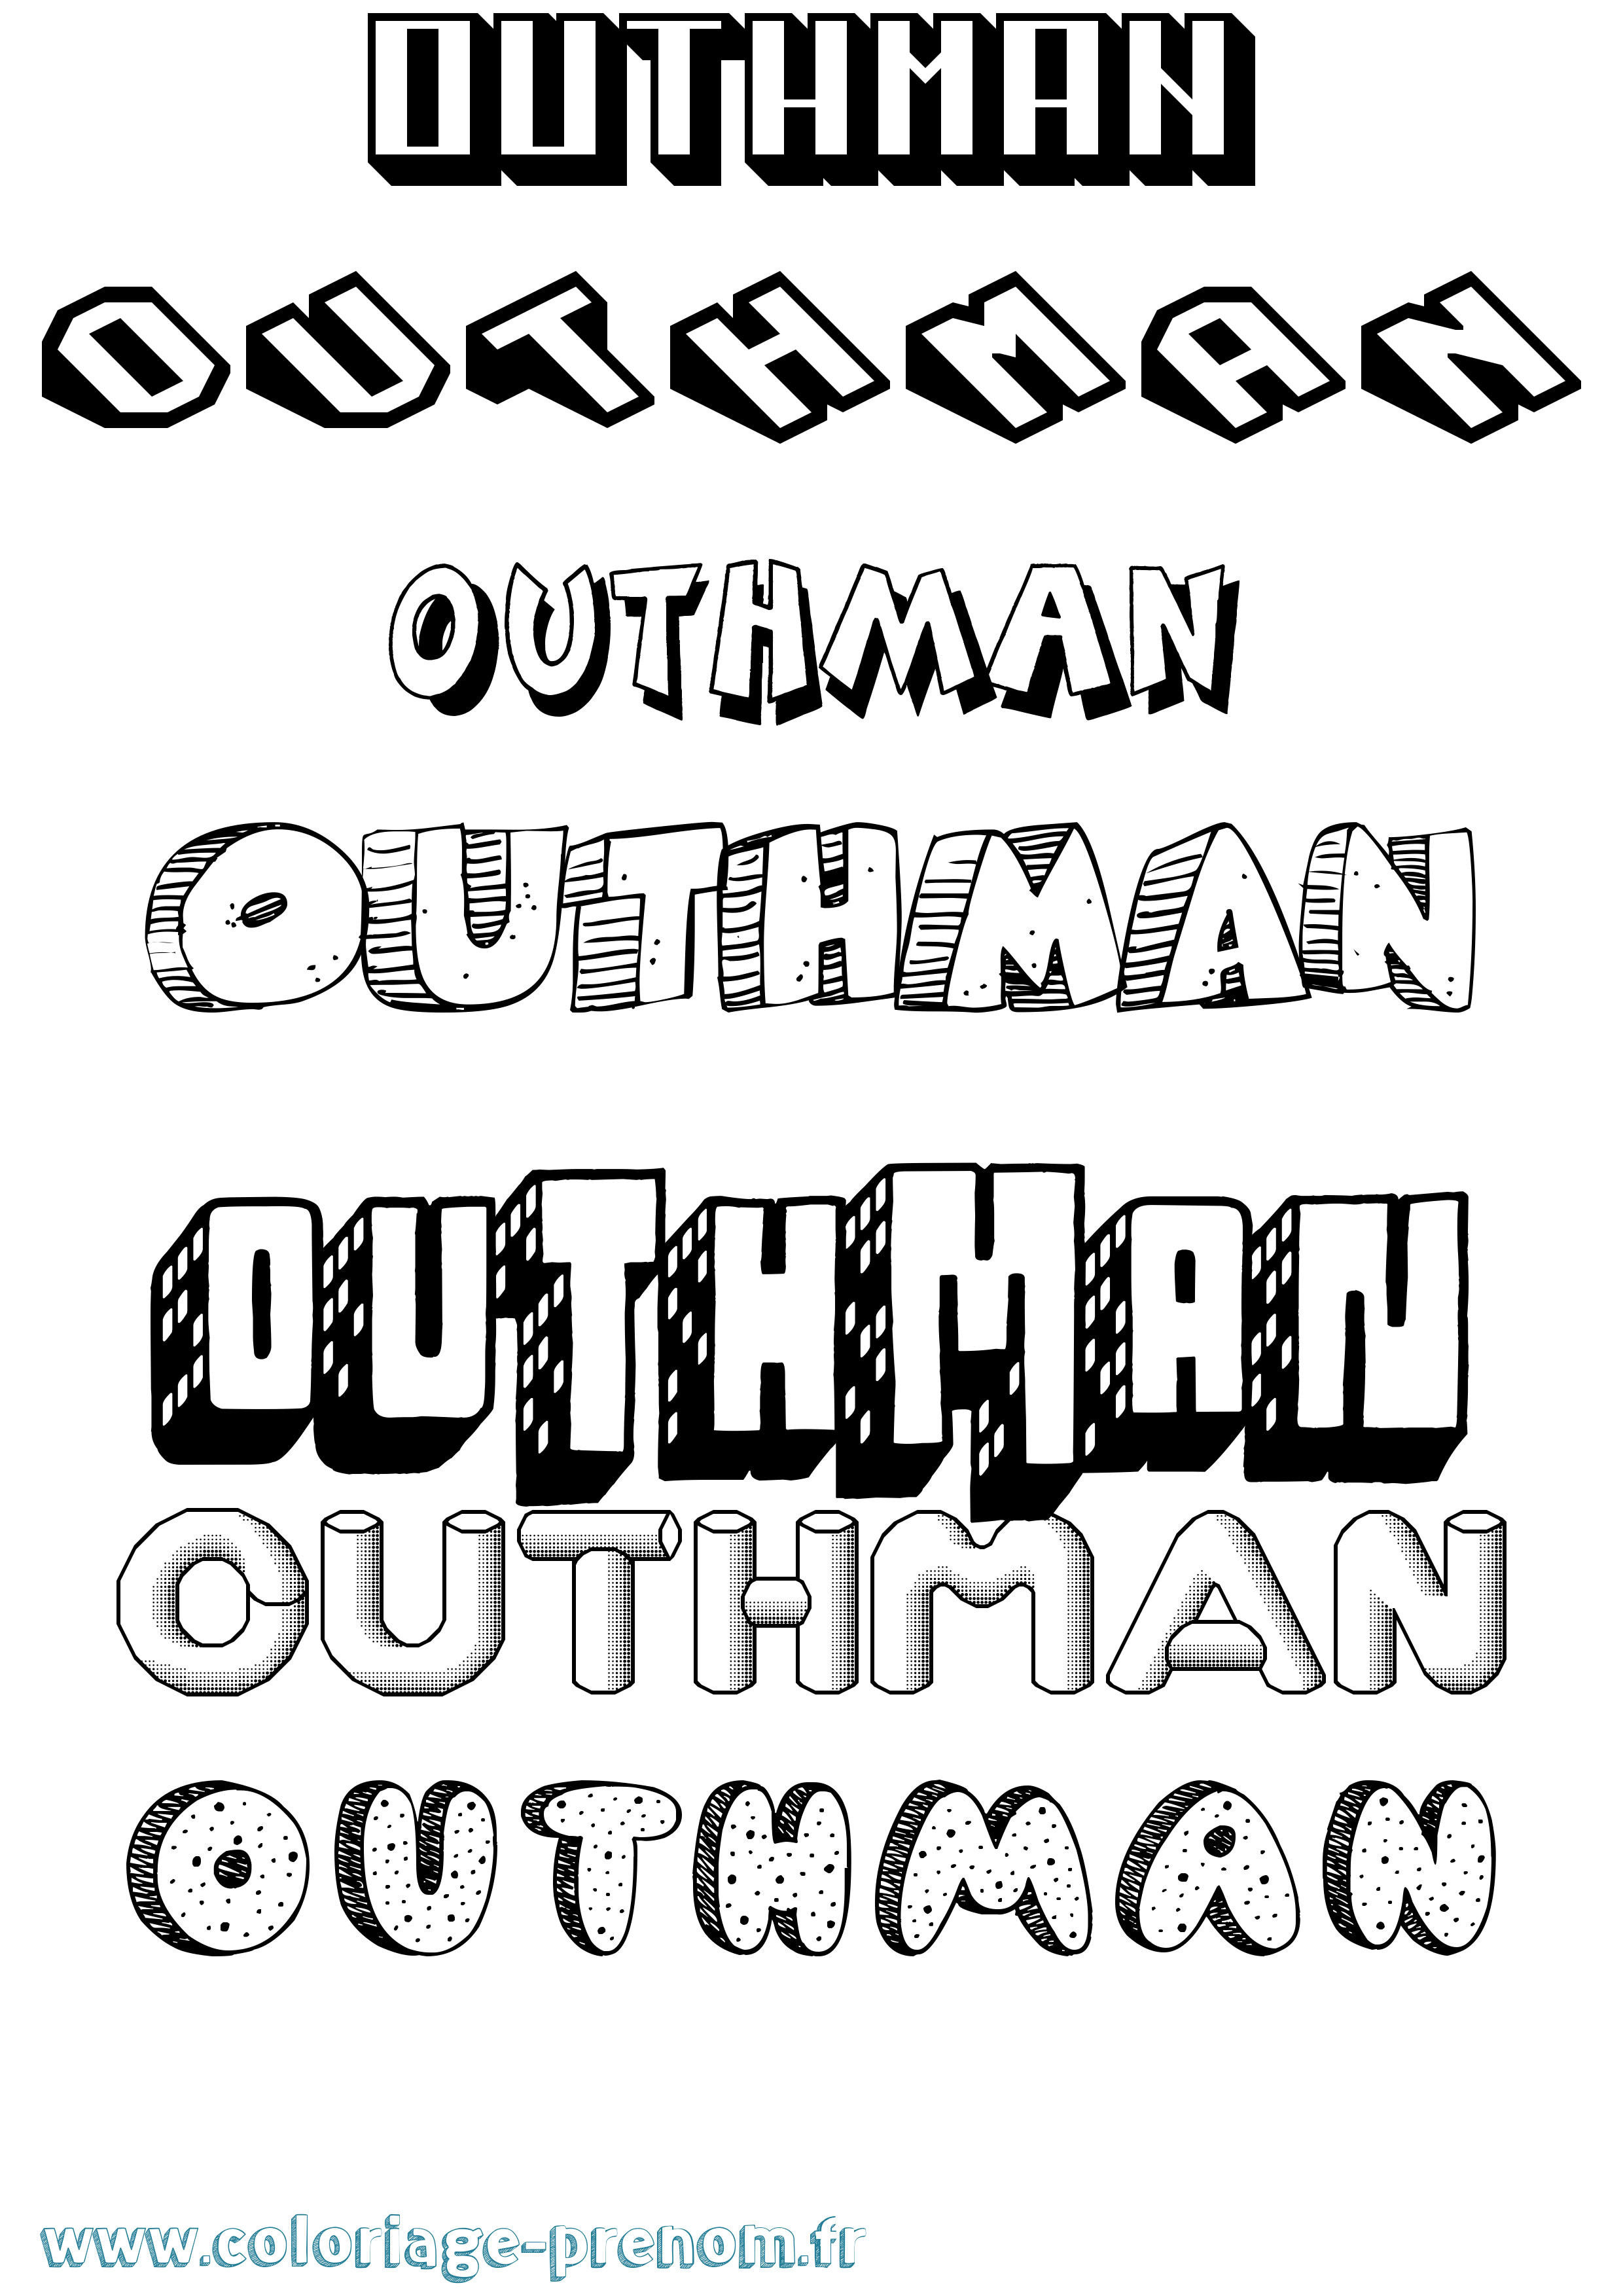 Coloriage prénom Outhman Effet 3D